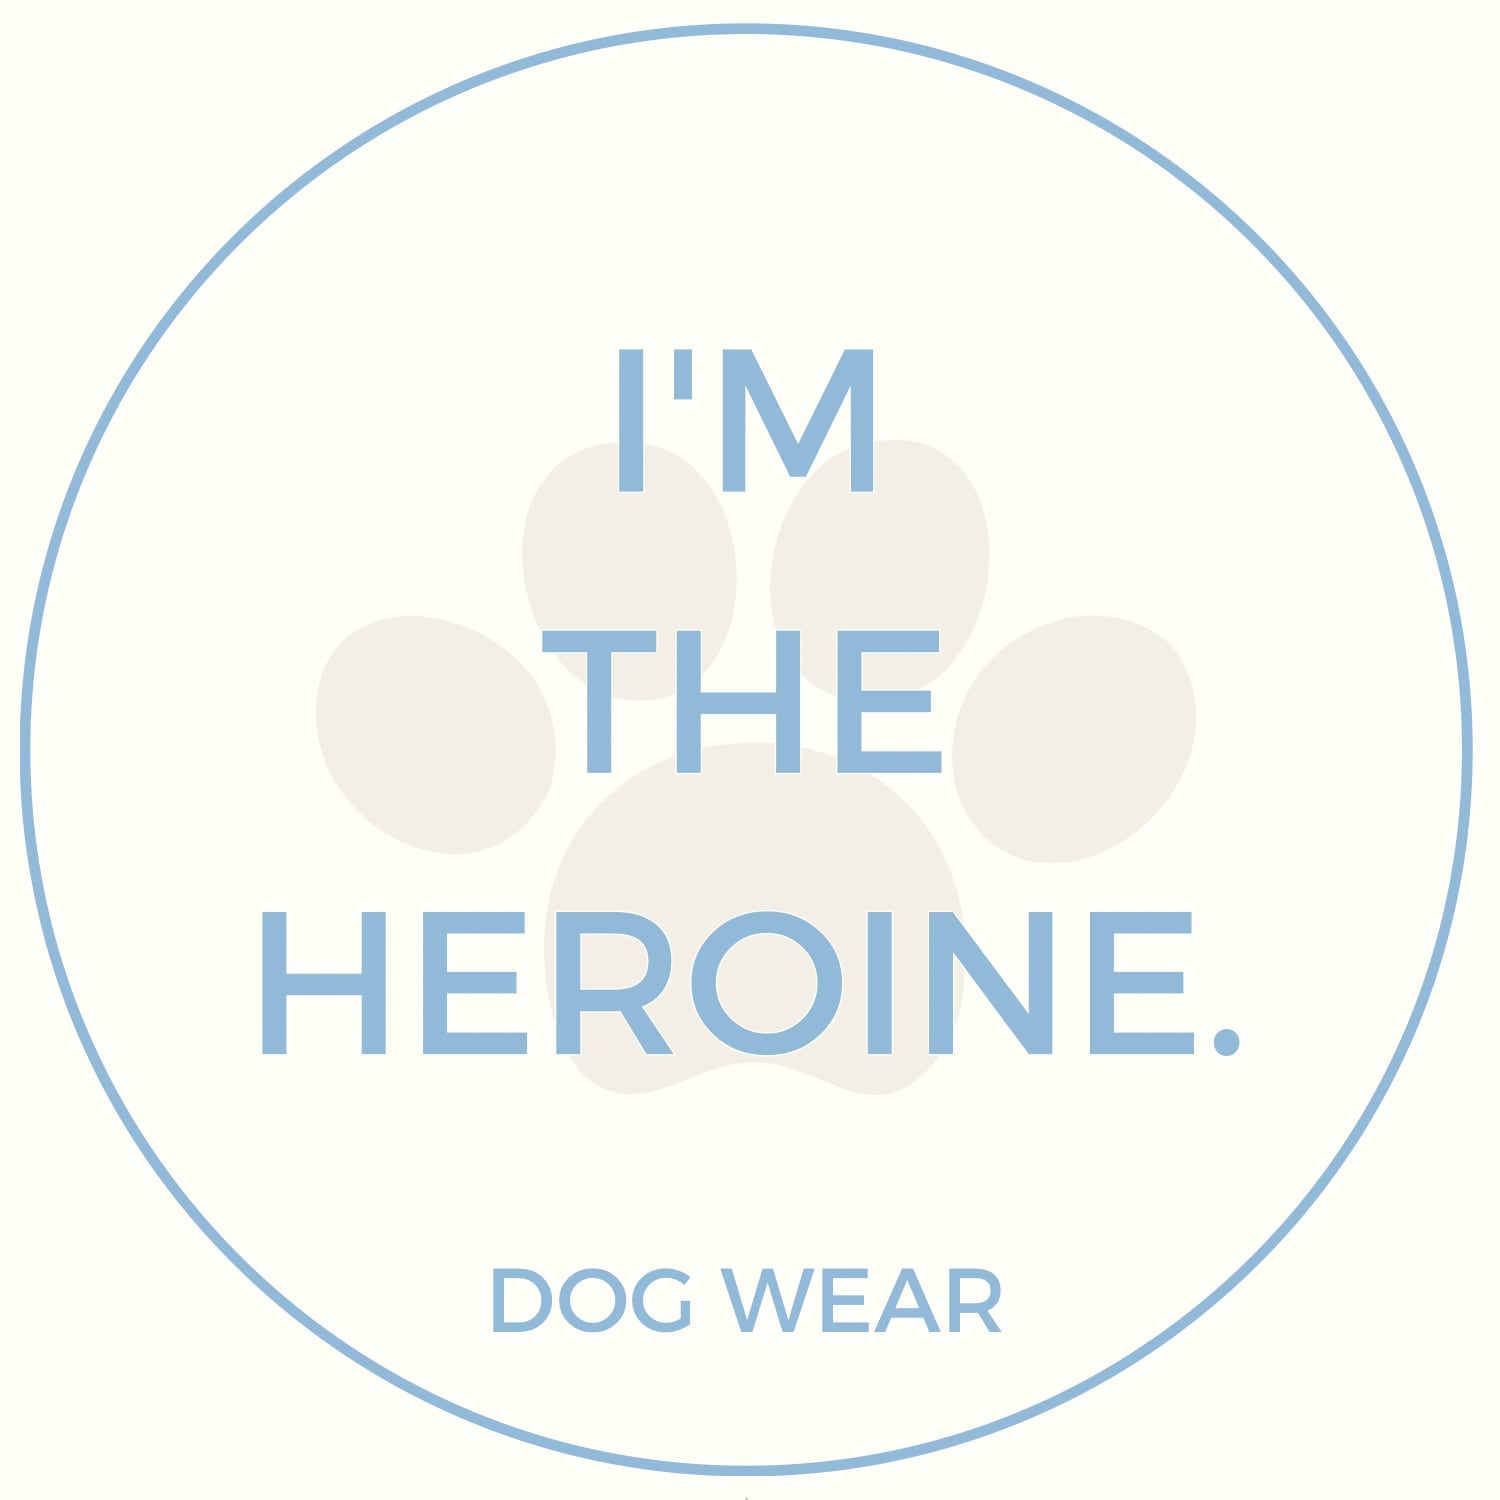 I'm the heroine.